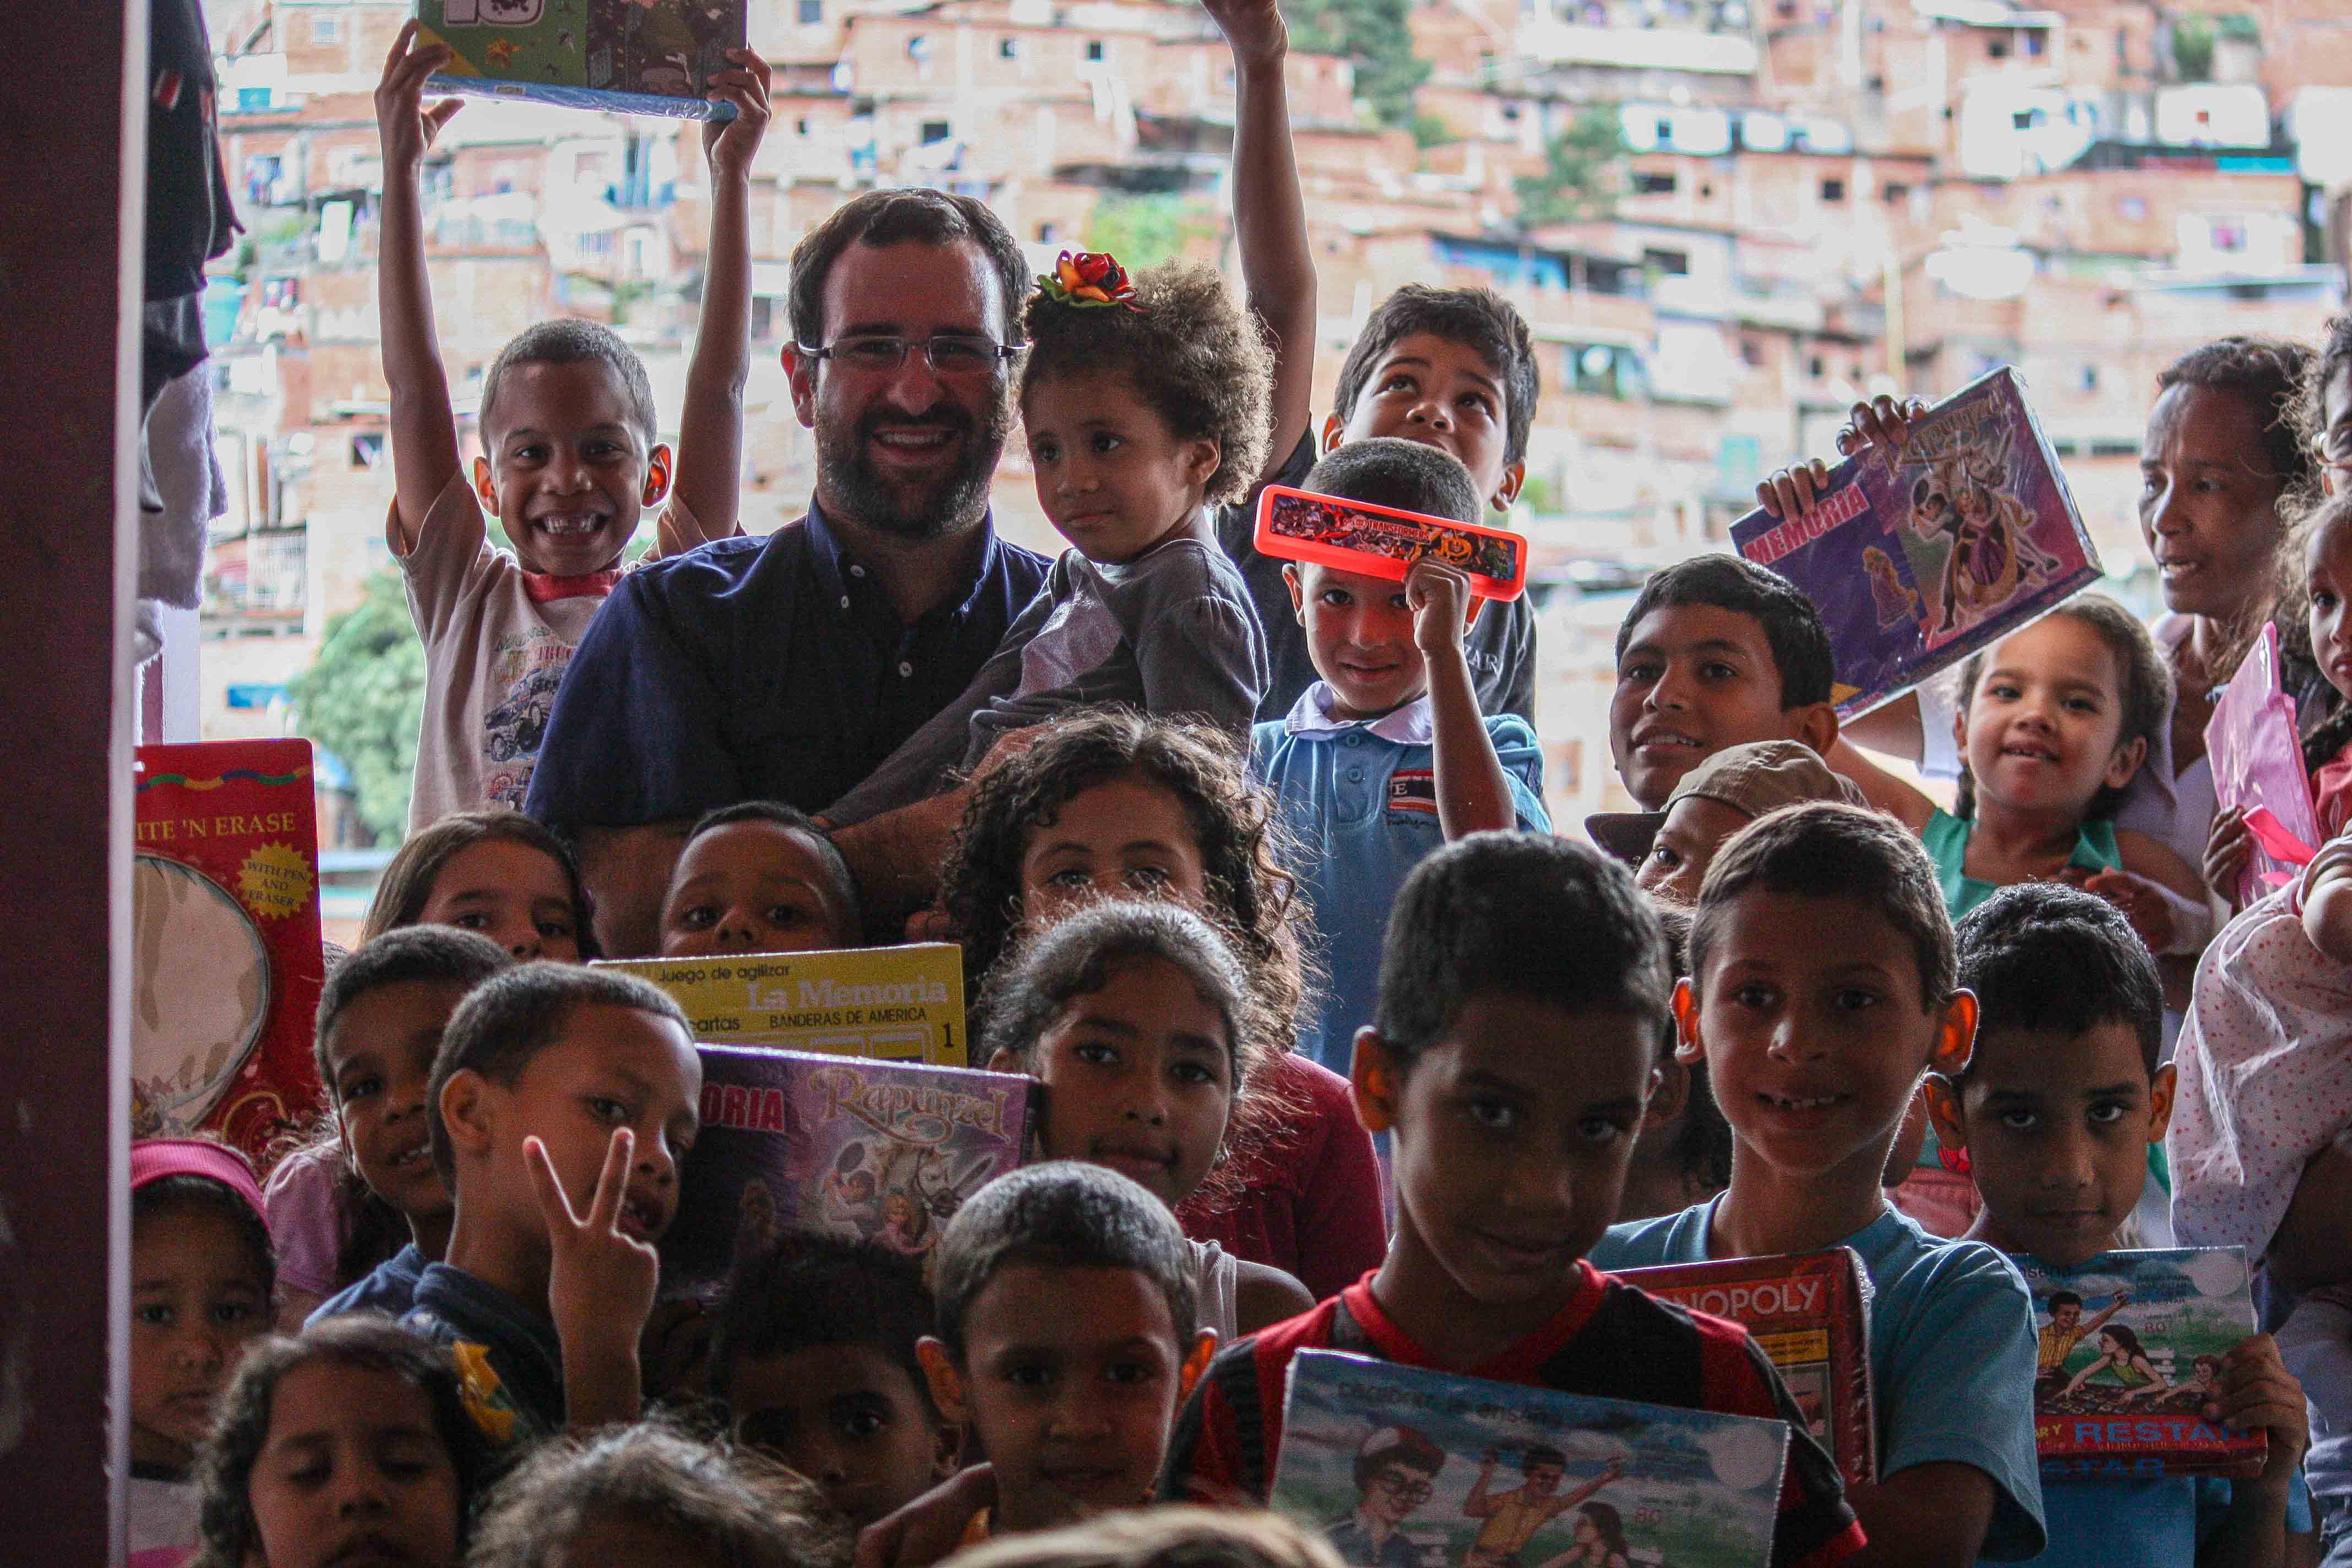 Brian Fincheltub: Hemos repartido juguetes y sonrisas a más de 6 mil niños en Sucre